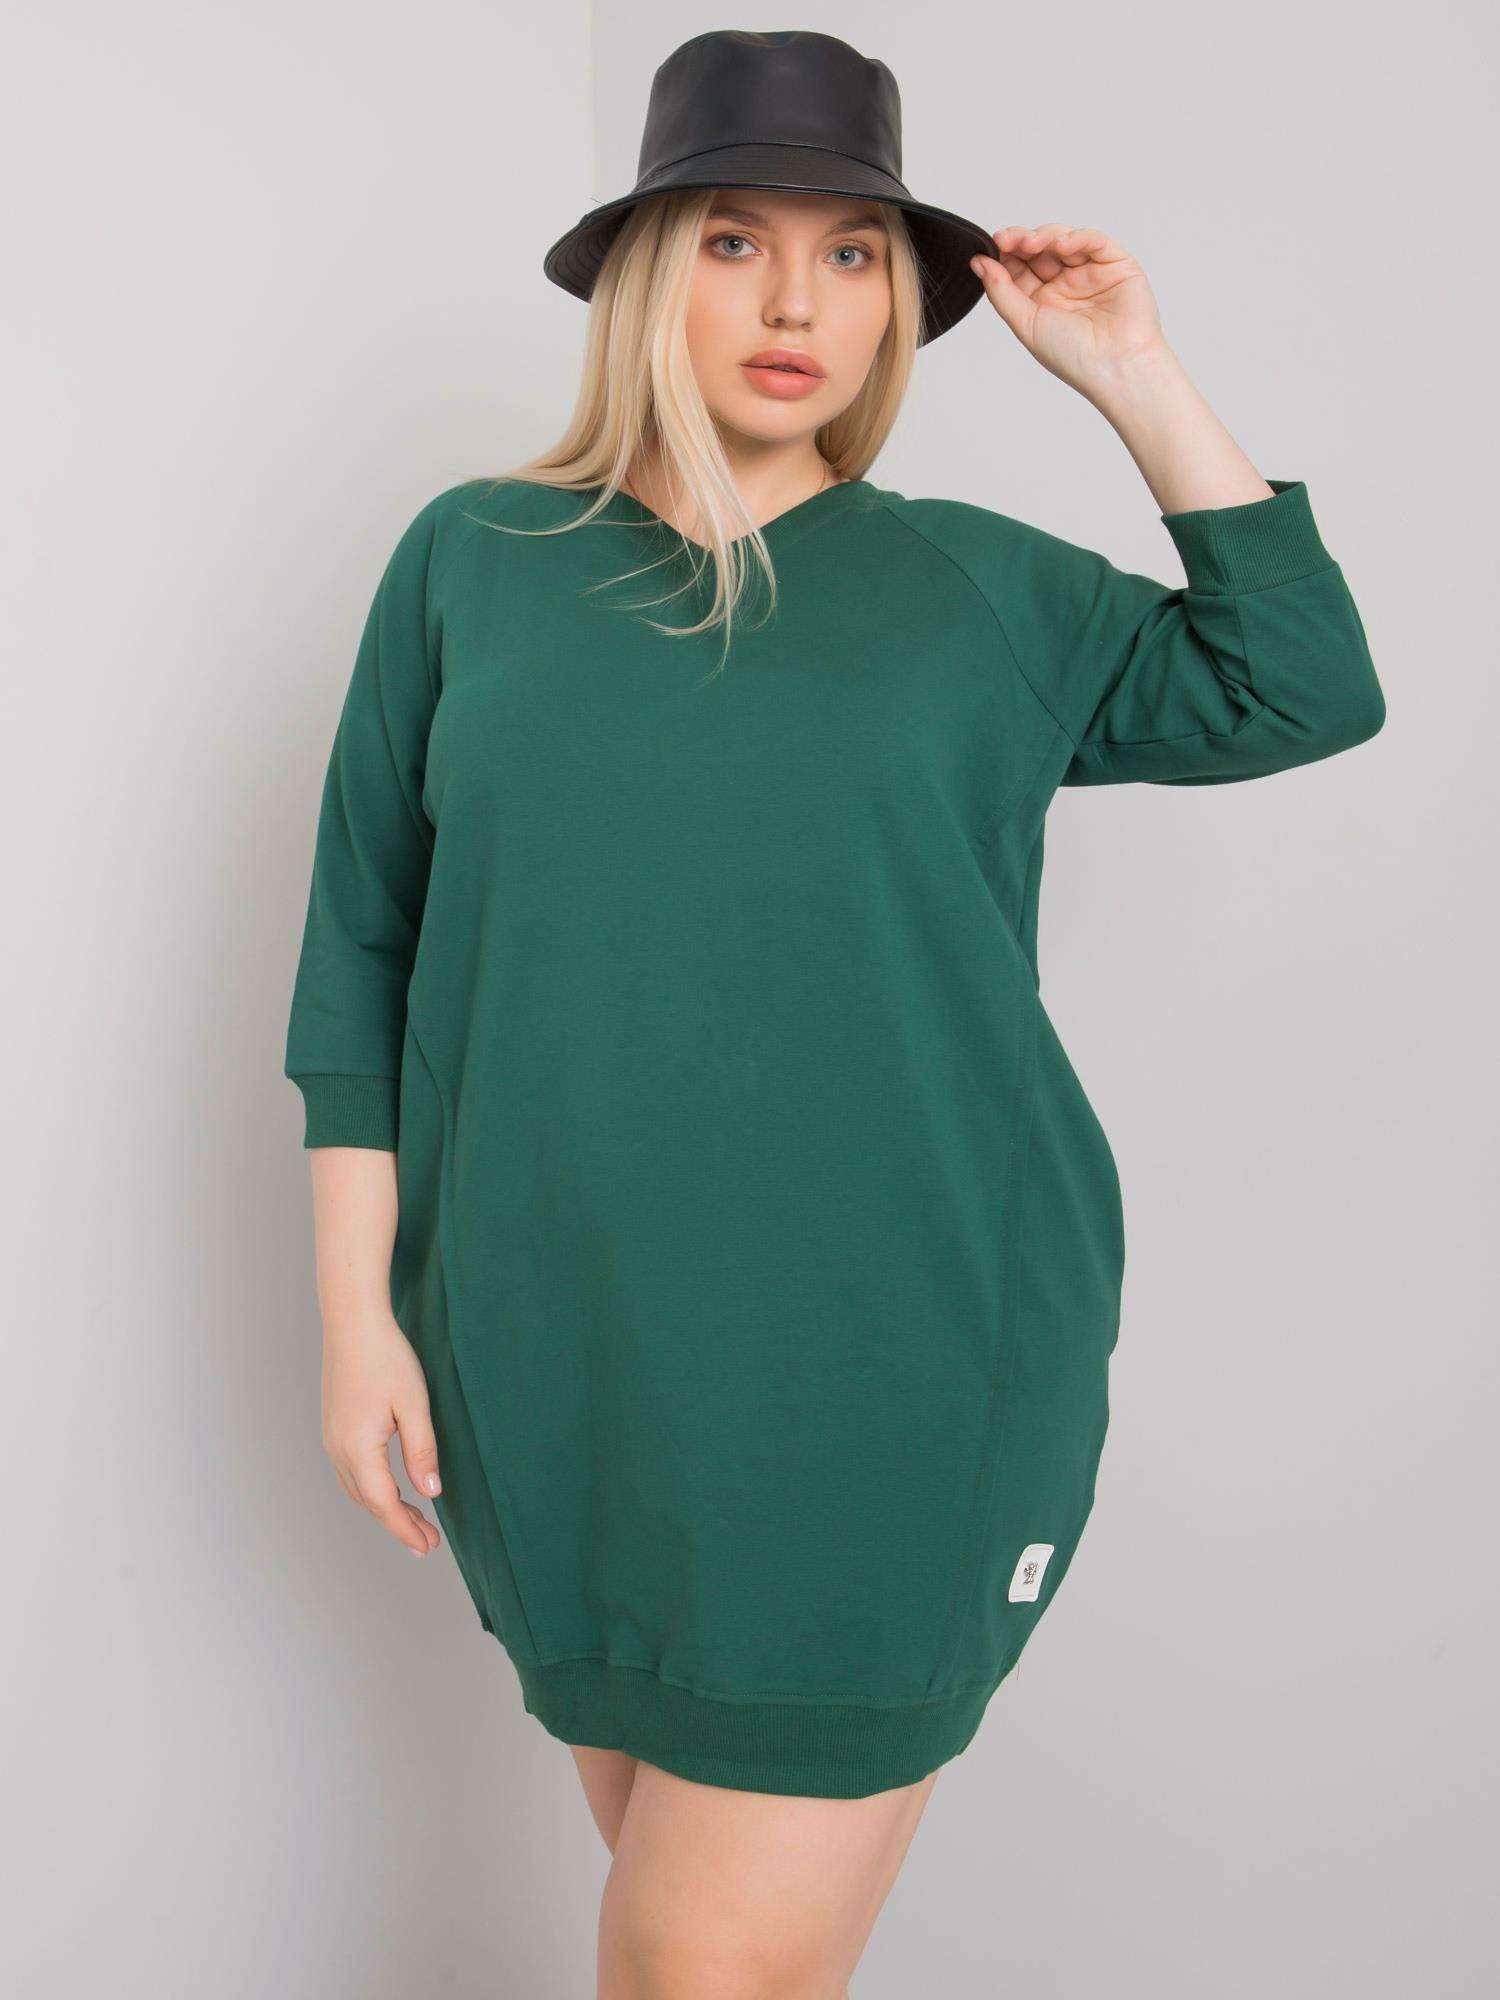 Tmavě zelené plus size šaty s kapsami jedna velikost